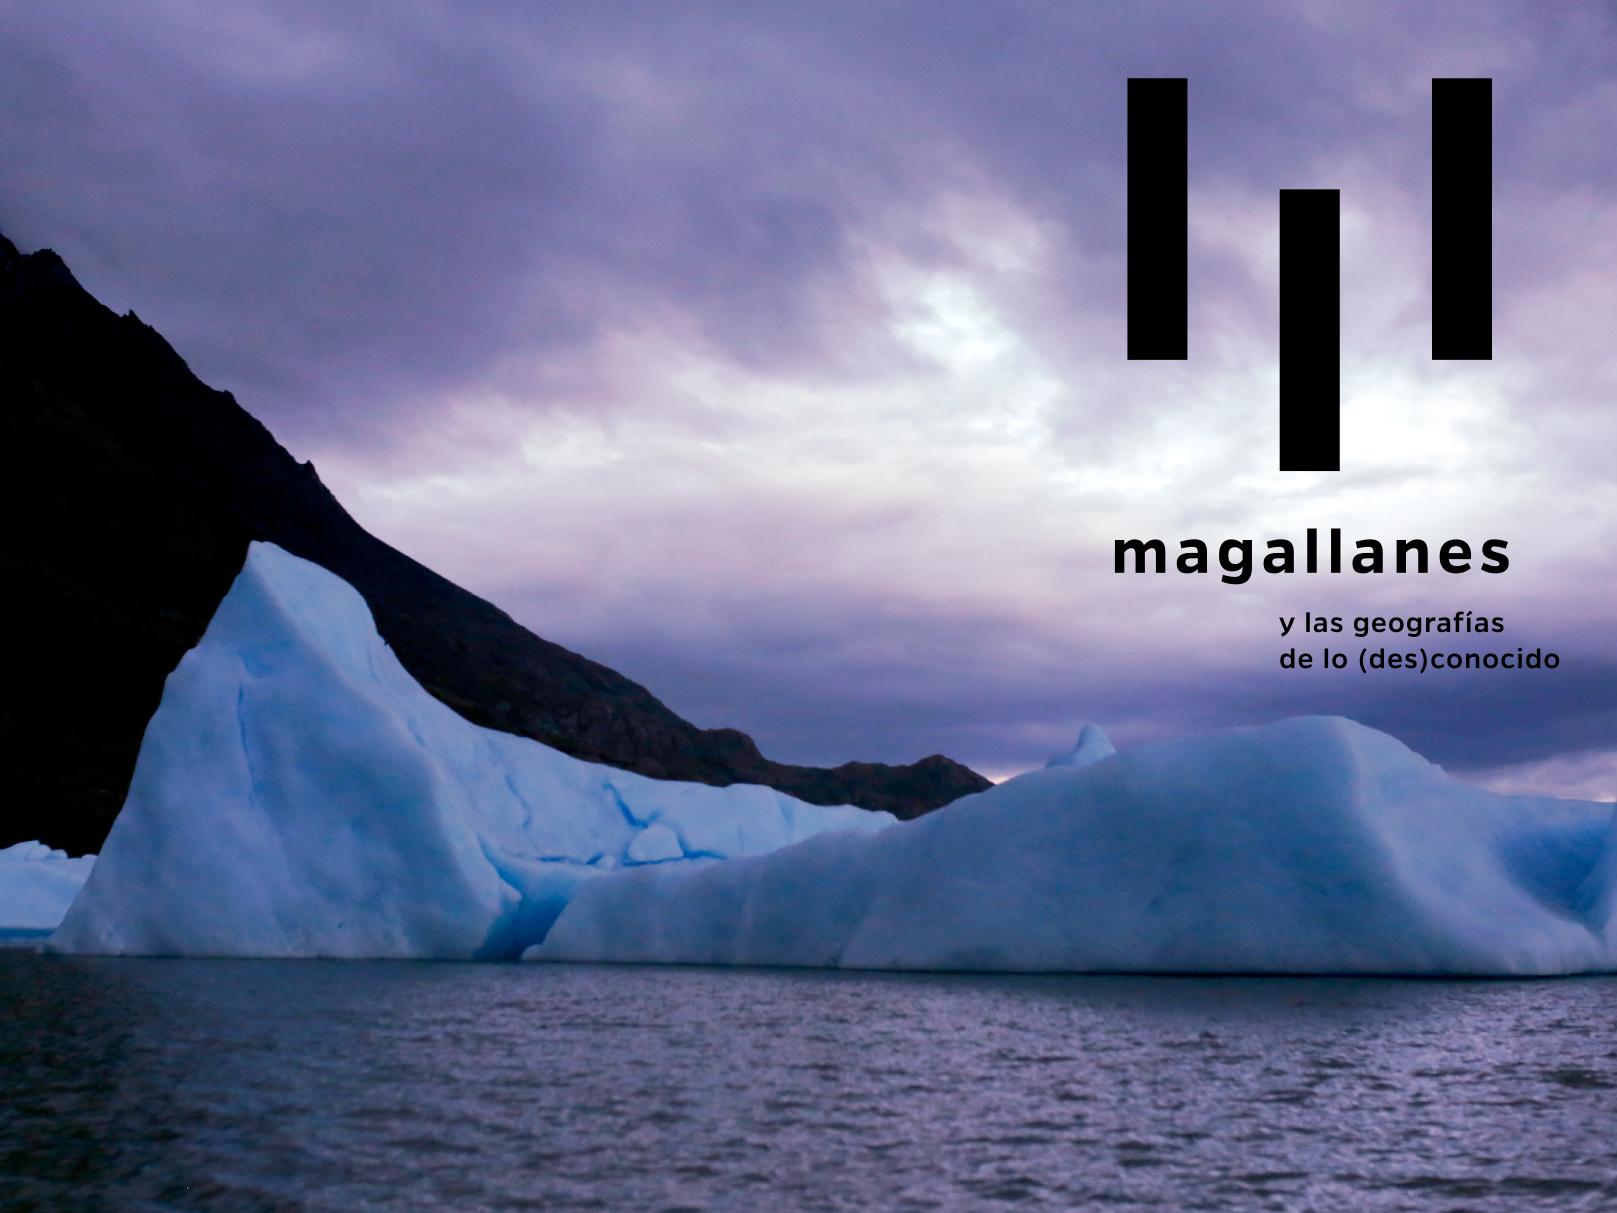 Magallanes y las geografías de lo (des)conocido